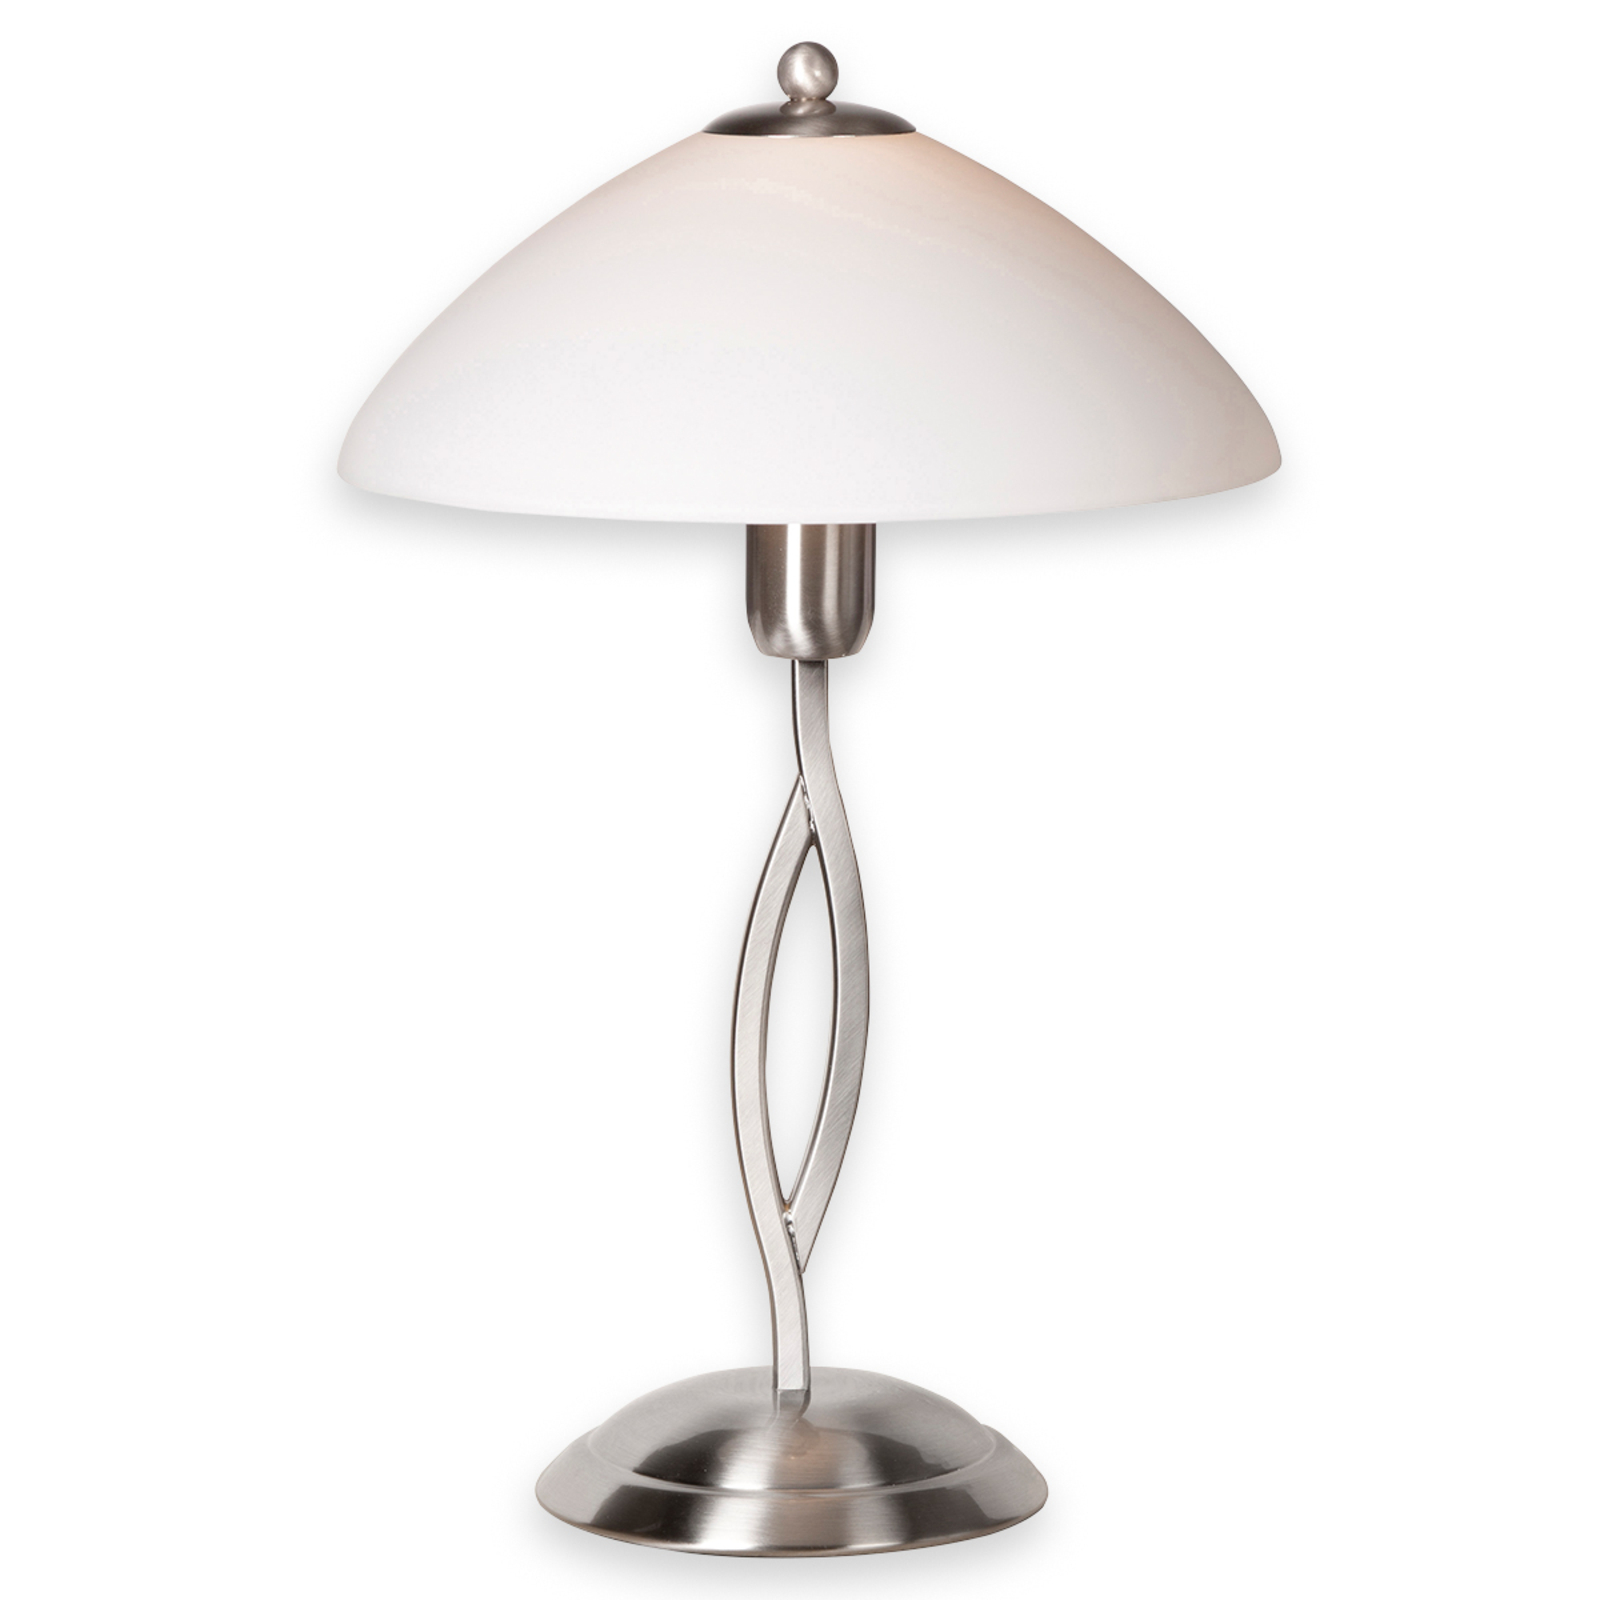 Asztali lámpa Capri magassága 45 cm acél/fehér